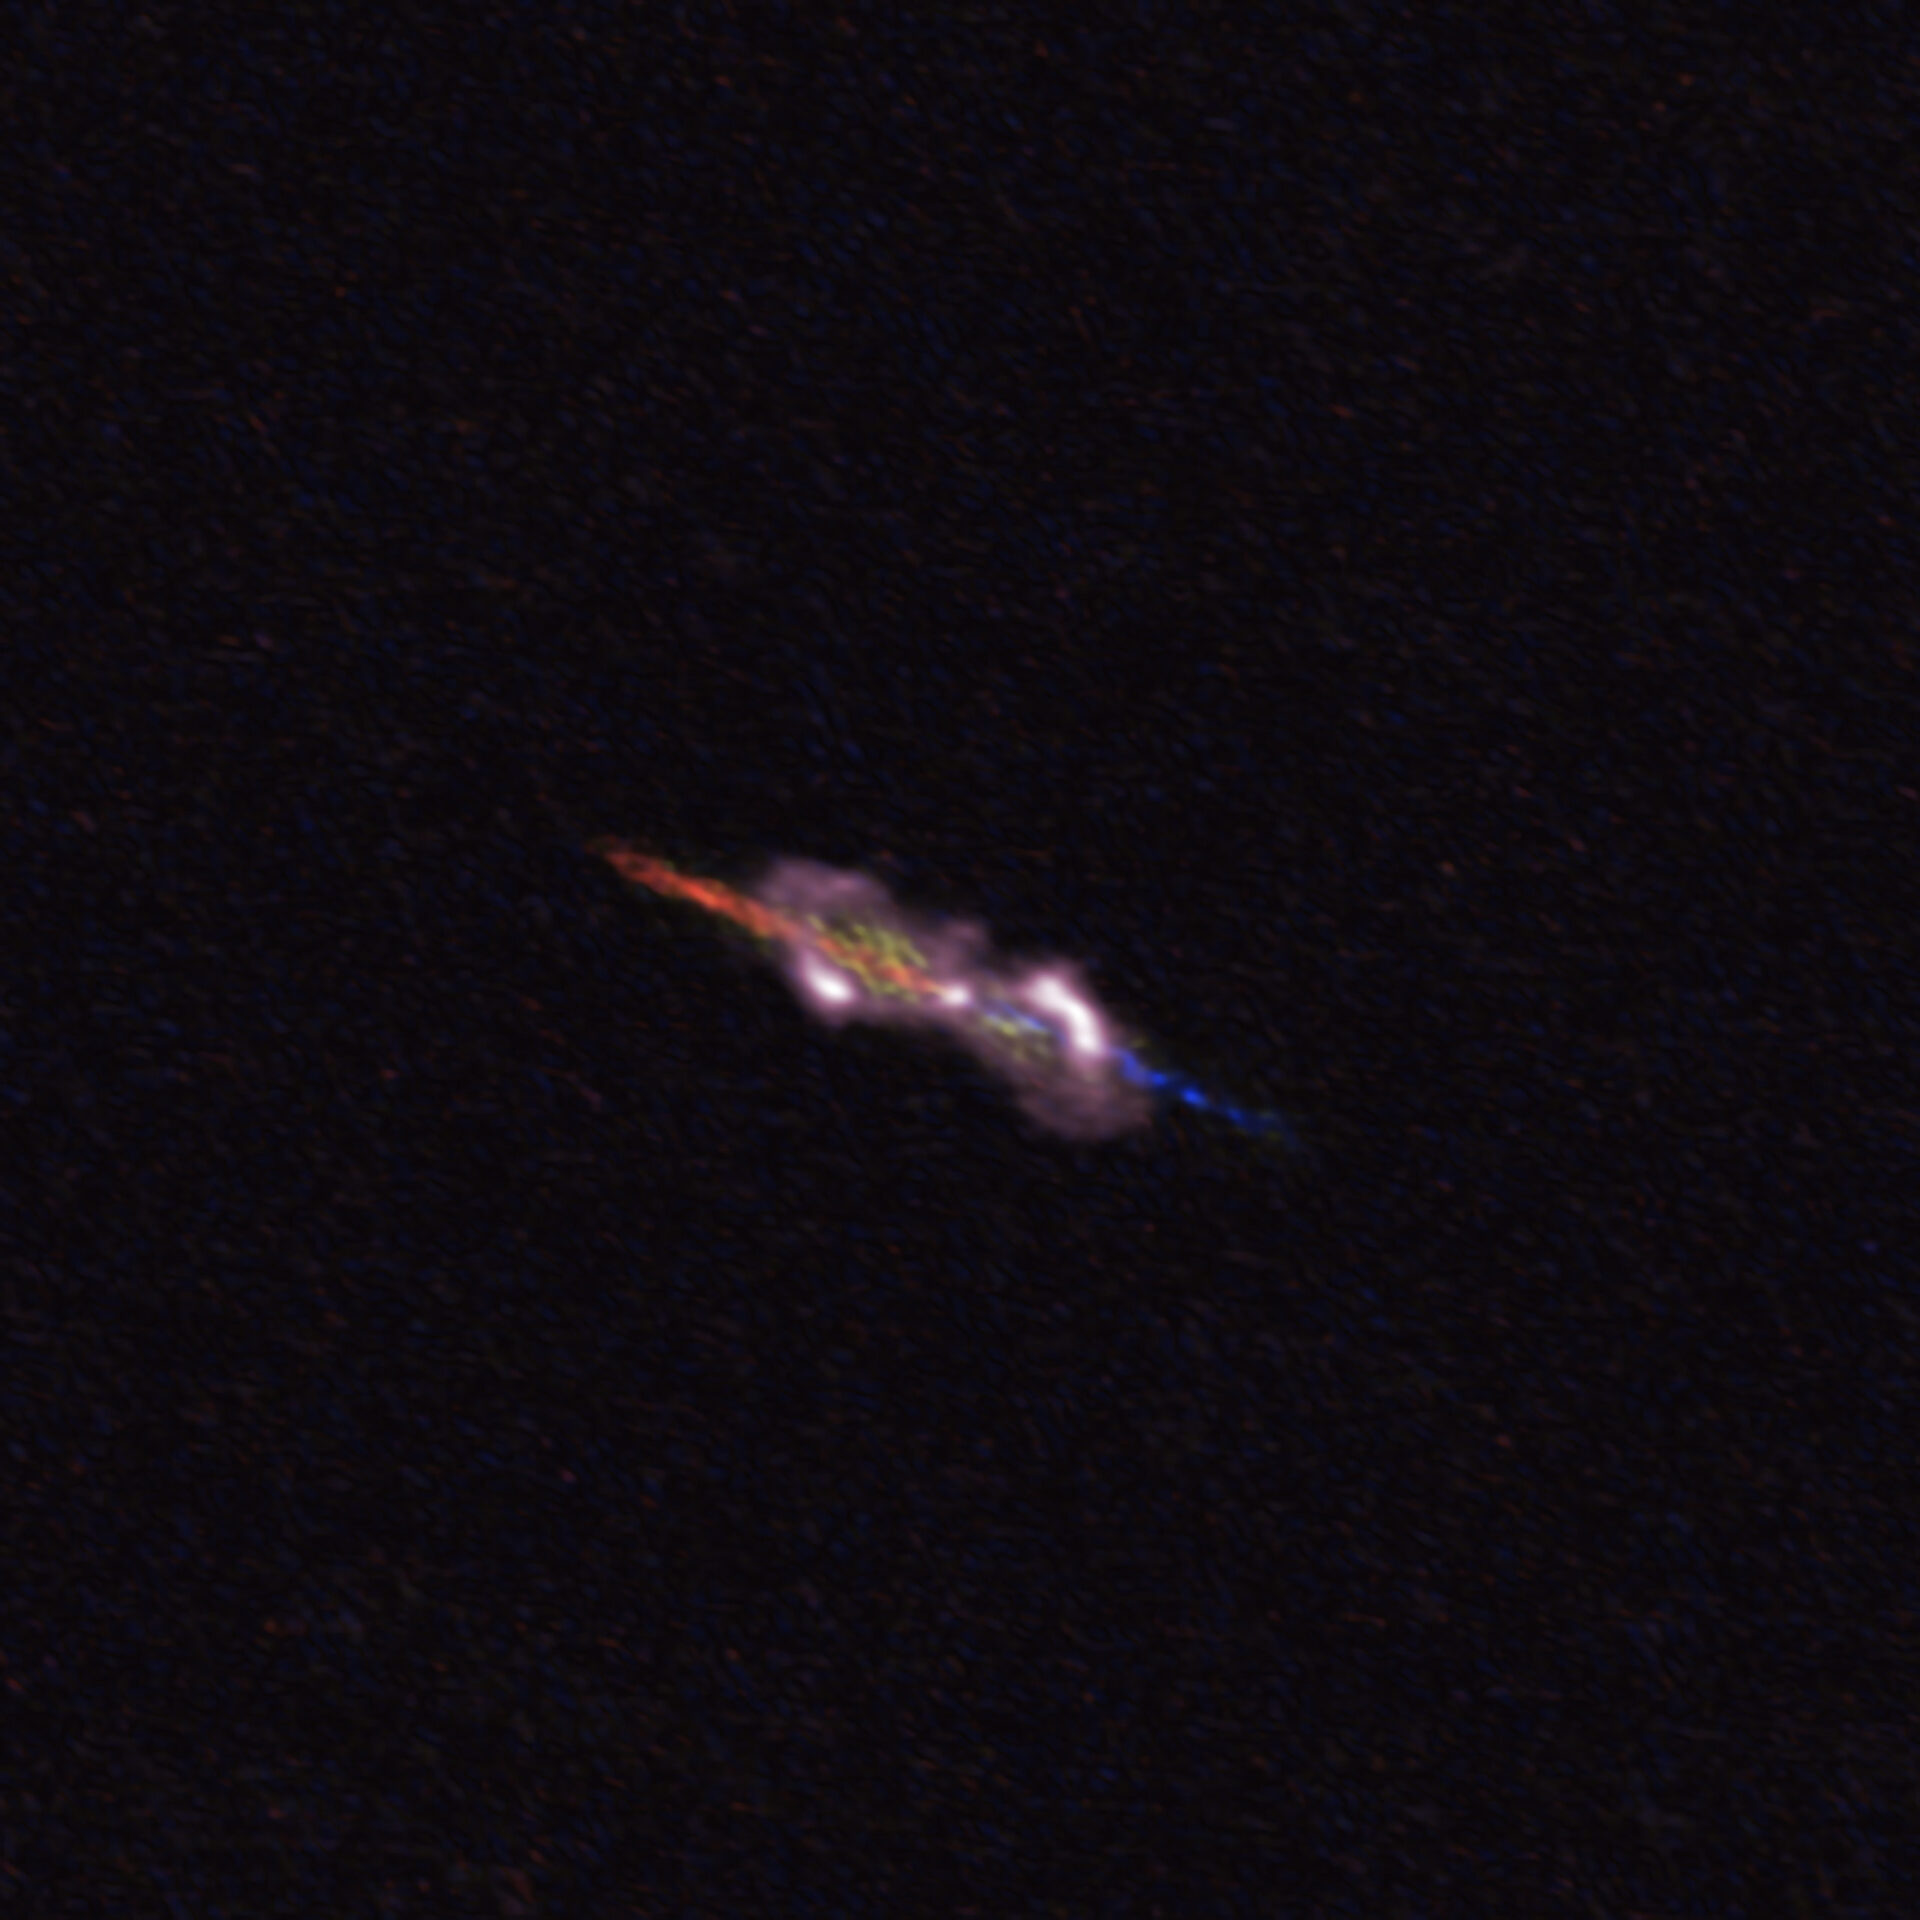 <p>La imagen de ALMA del sistema estelar Fuente de agua W43A se encuentra a unos 7000 años luz de la Tierra en la constelación de Aquila, el Águila. La estrella doble en su centro es demasiado pequeña para ser visible en esta imagen. Sin embargo, las mediciones de ALMA muestran que la interacción de las estrellas ha cambiado su entorno inmediato. Los dos chorros expulsados de las estrellas centrales se ven en azul (acercándose) y rojo (alejándose). Las nubes polvorientas arrastradas por los chorros se muestran en rosa. Crédito: ALMA (ESO / NAOJ / NRAO), D. Tafoya et al.</p>
